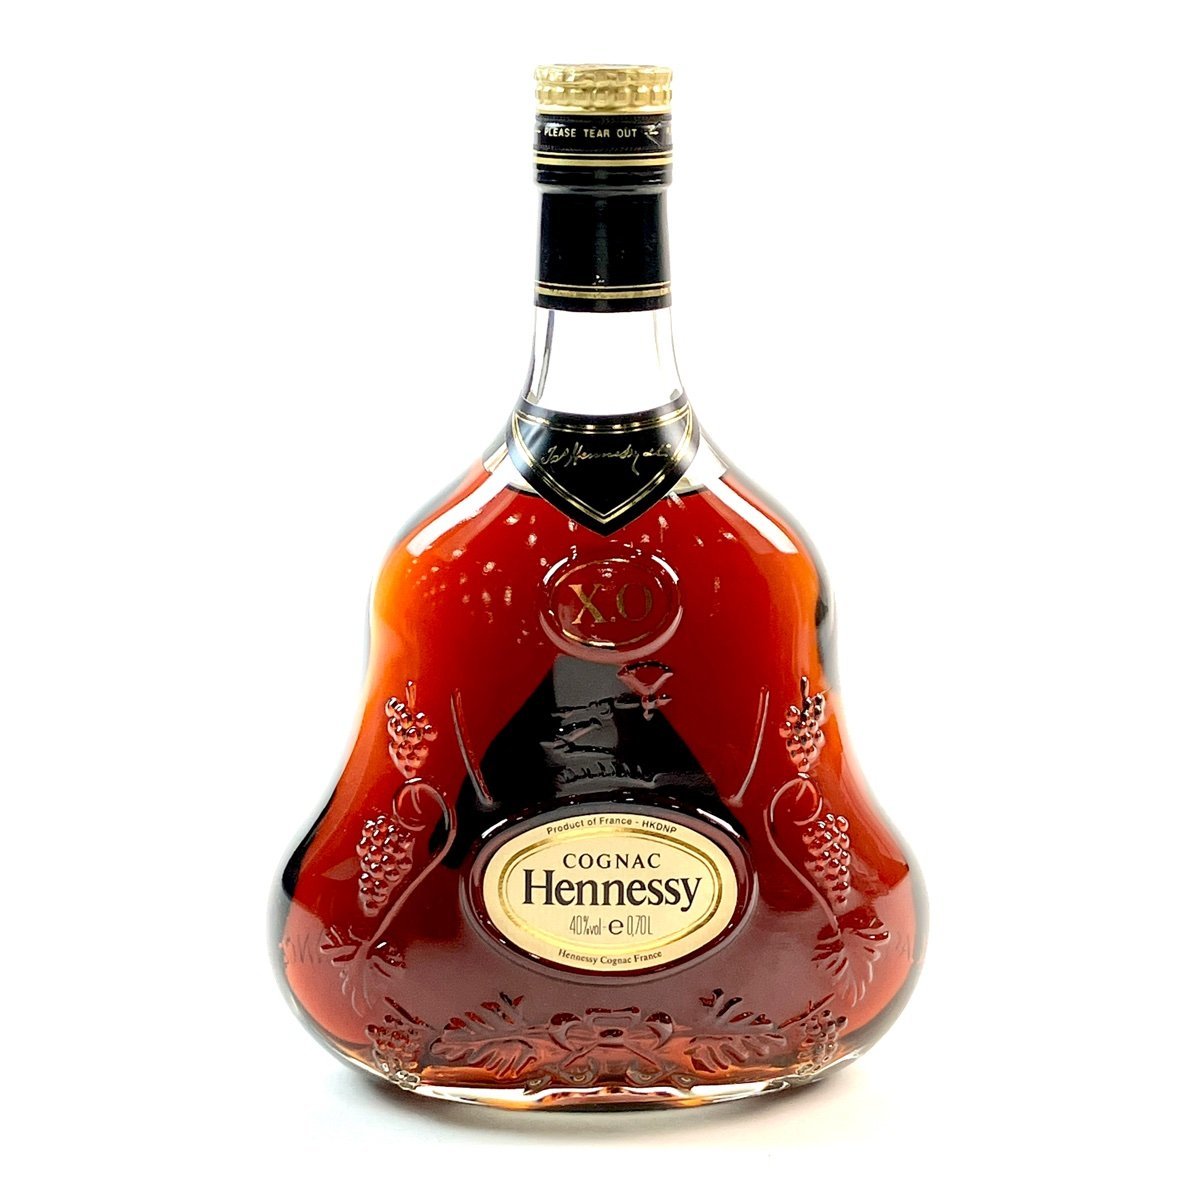 ヘネシー Hennessy XO 金キャップ クリアボトル 700ml ブランデー コニャック 【古酒】の画像1